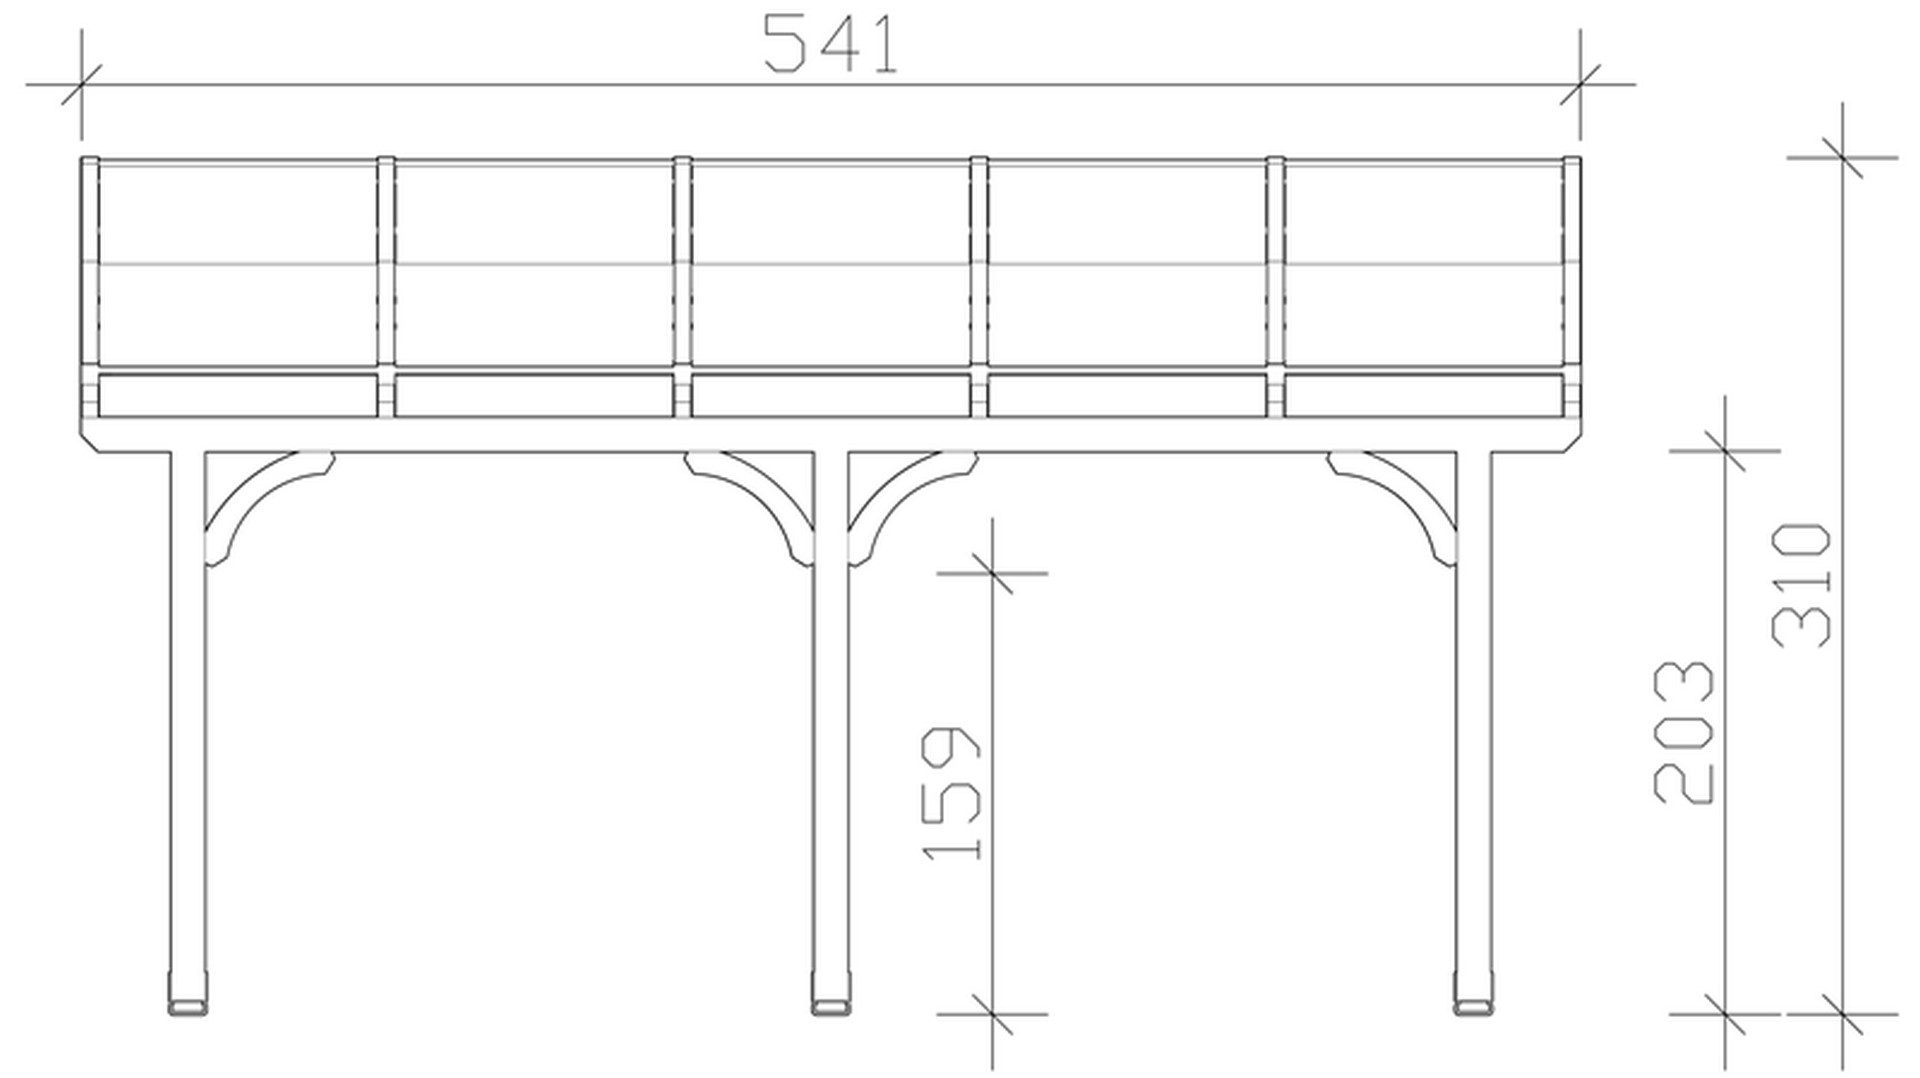 Skan Holz Terrassenüberdachung Venezia 541 x 389 cm, Leimholz, Doppelstegplatten